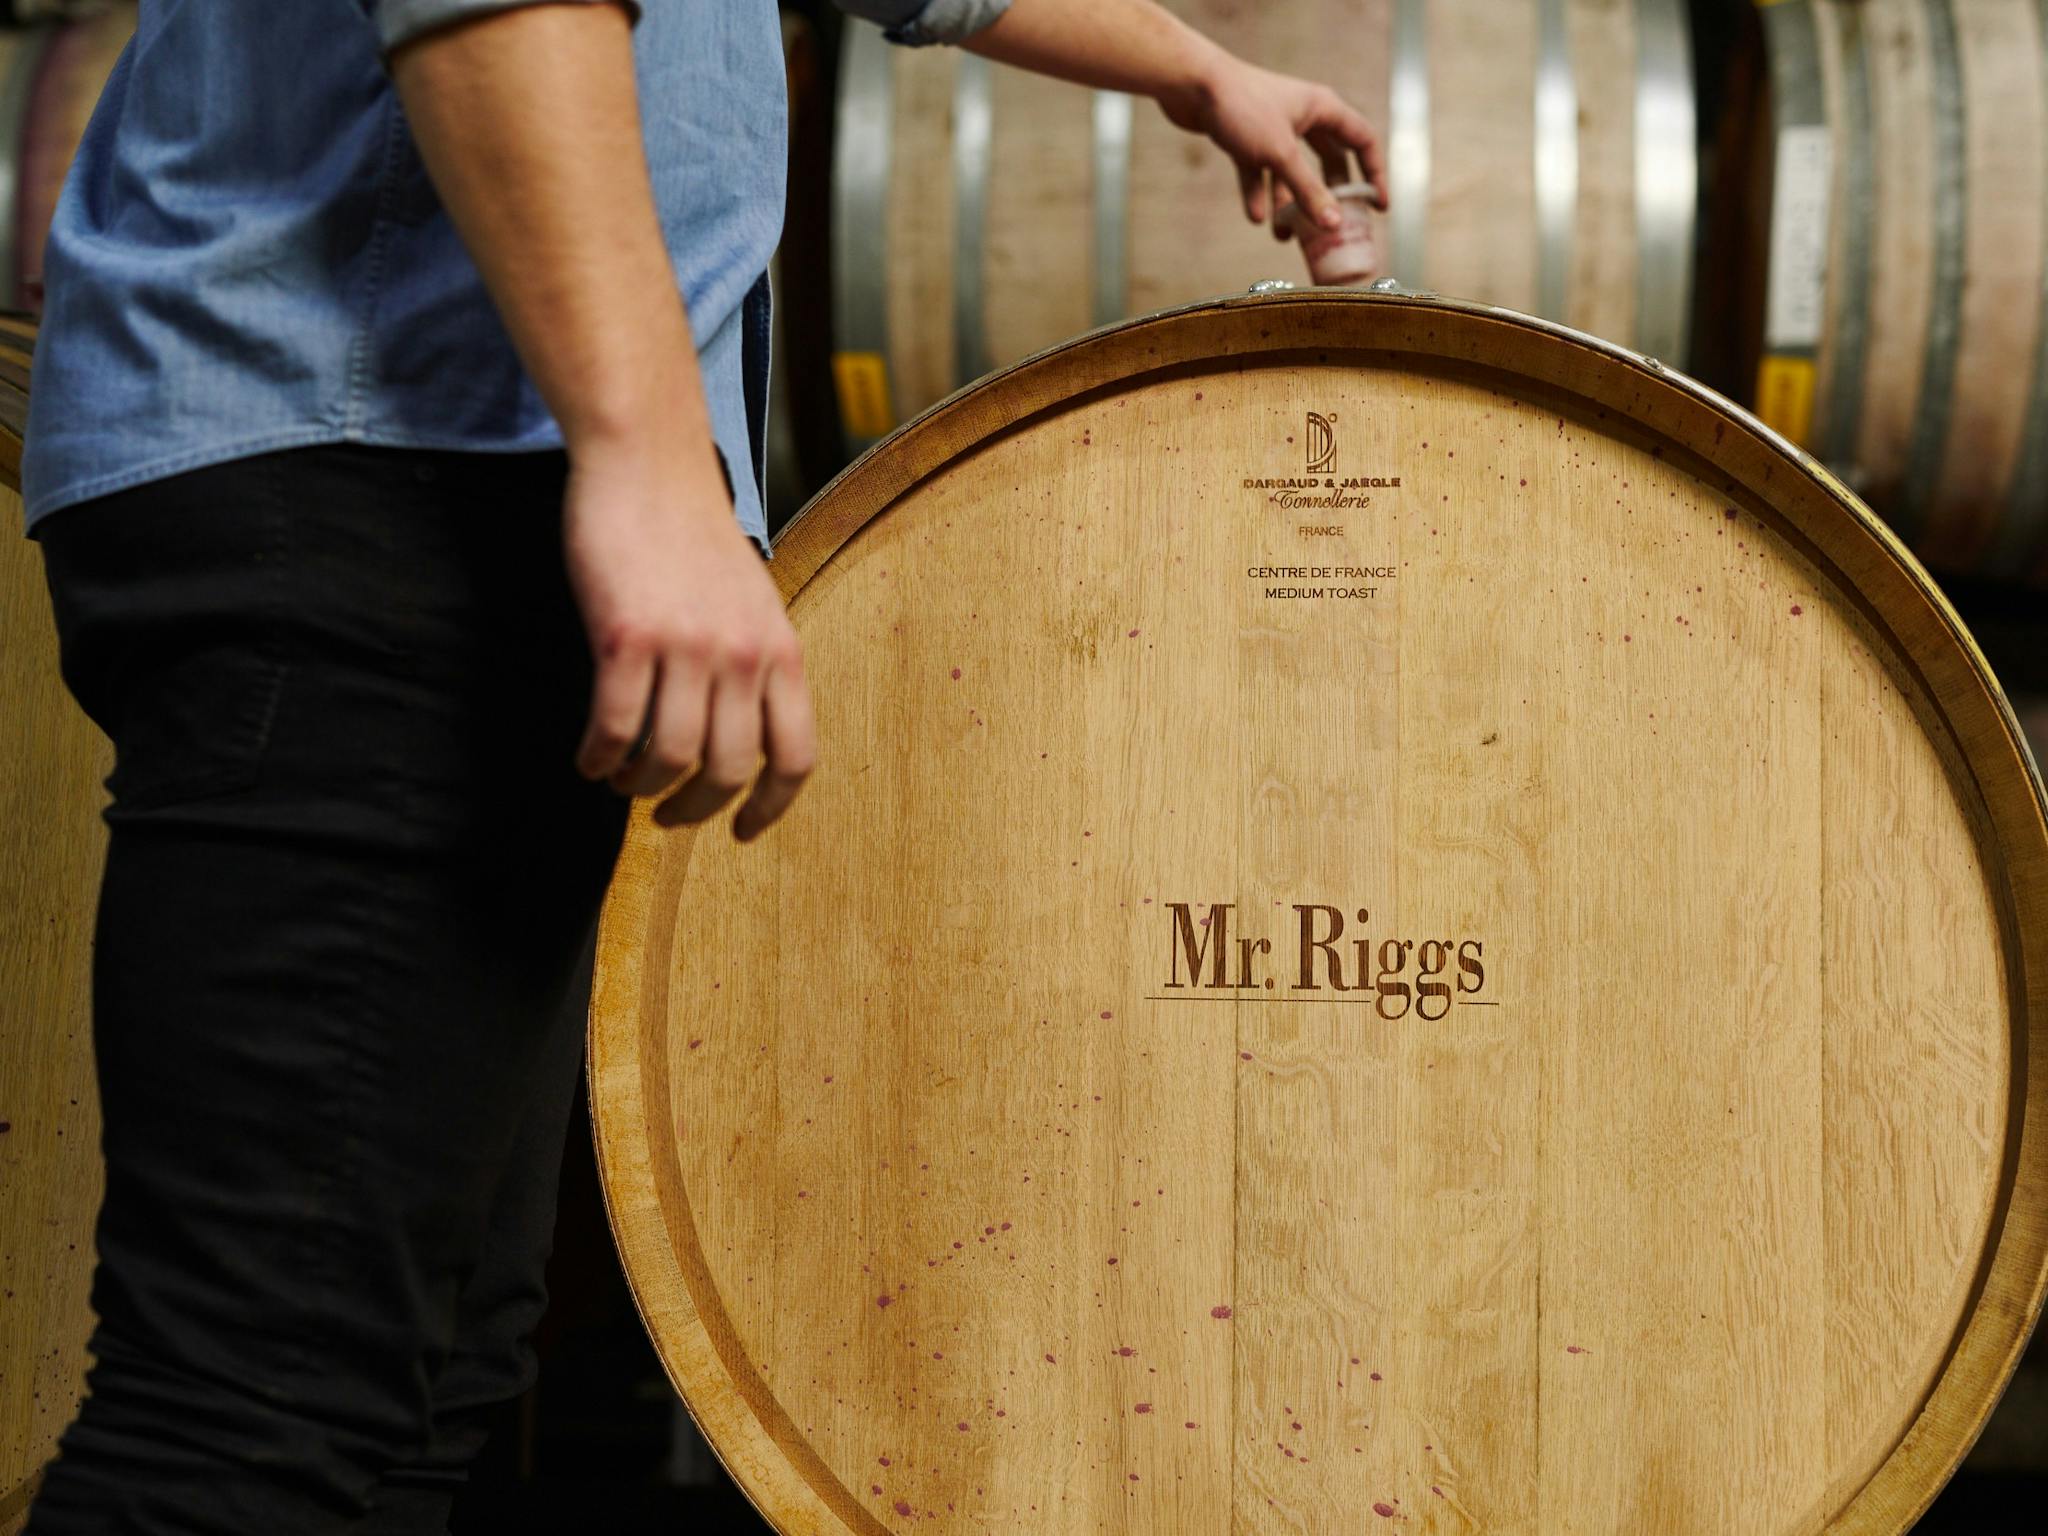 Mr. Riggs Wine Barrel